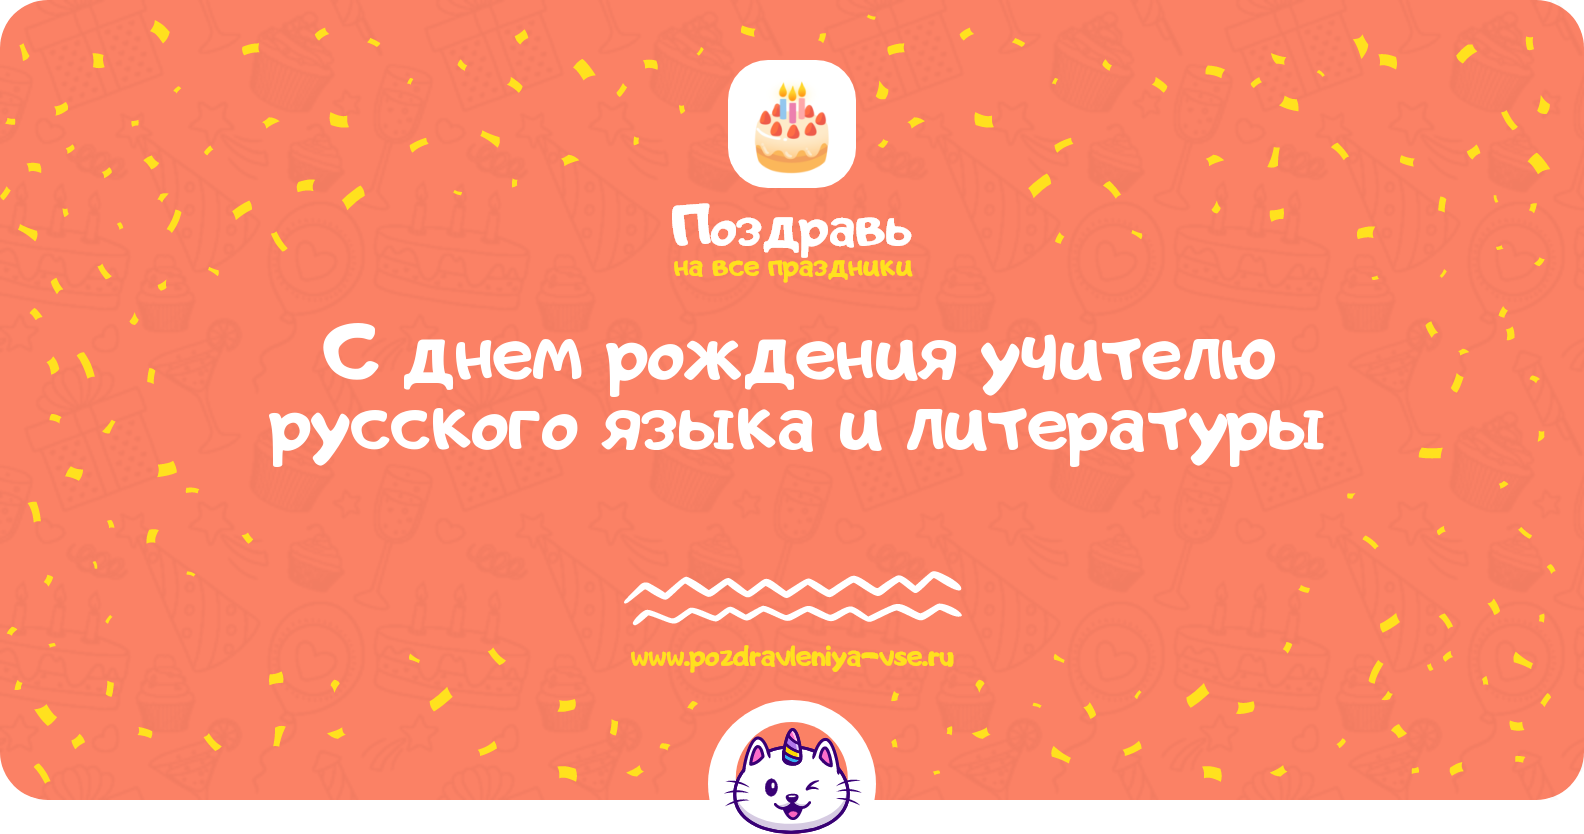 Поздравления с днем рождения учителю русского языка и литературы